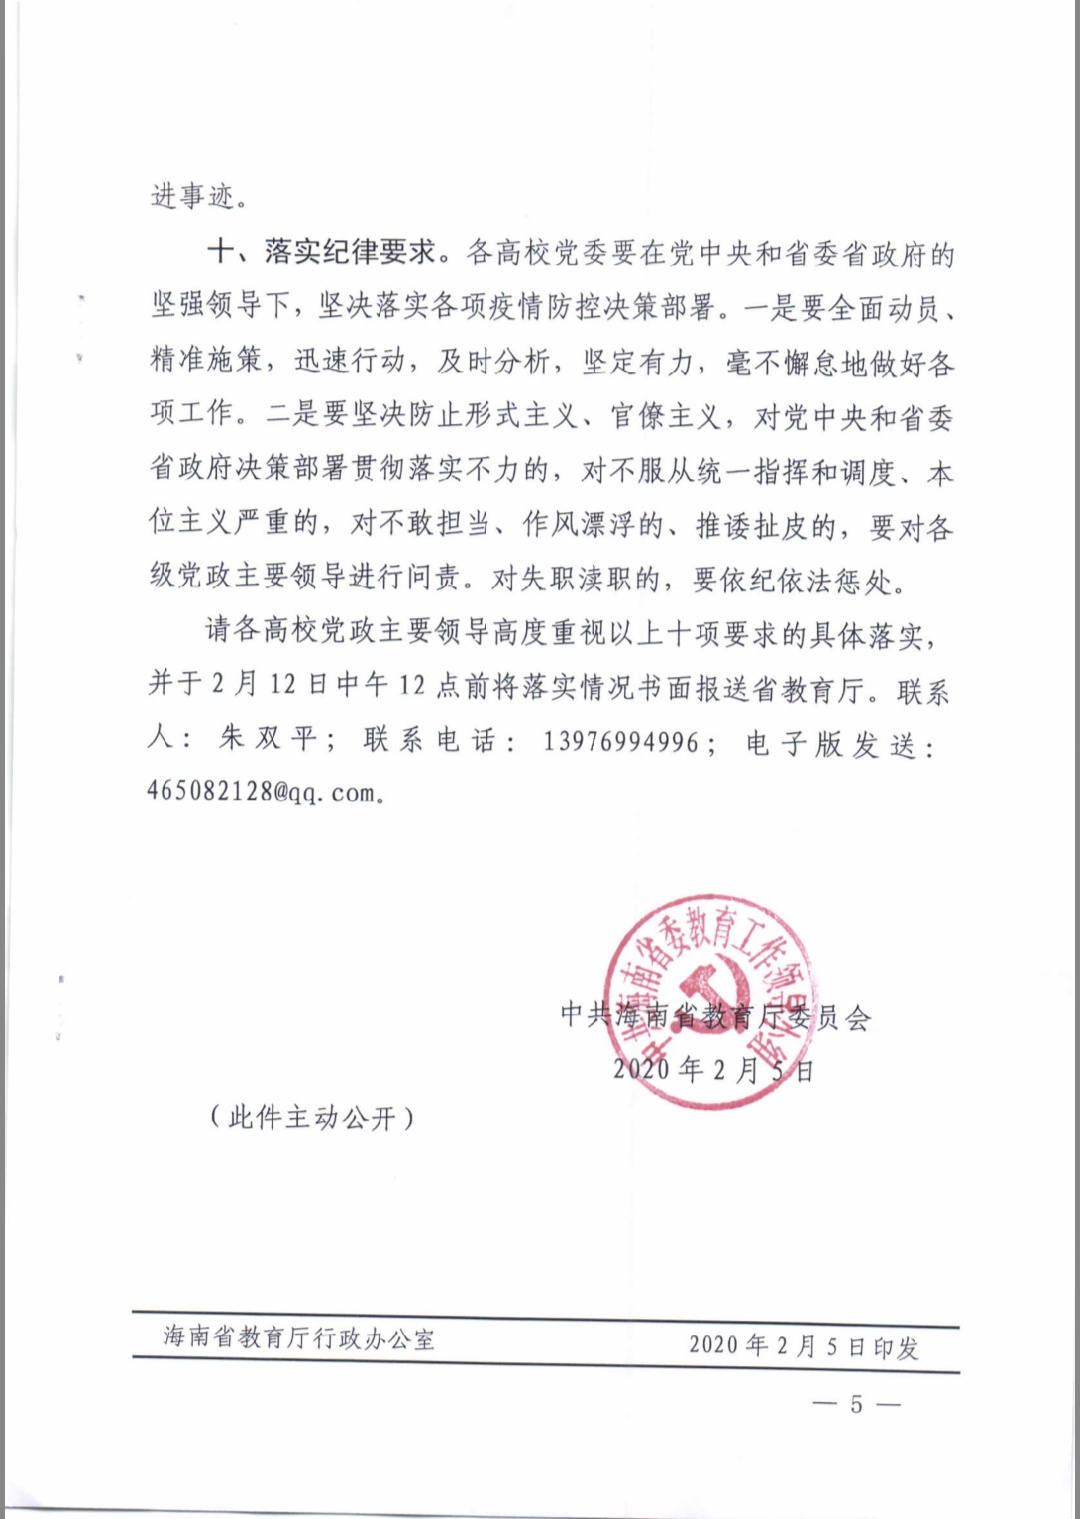 中共海南省教育厅委员会关于进一步做好当前高校疫情防控工作的通知